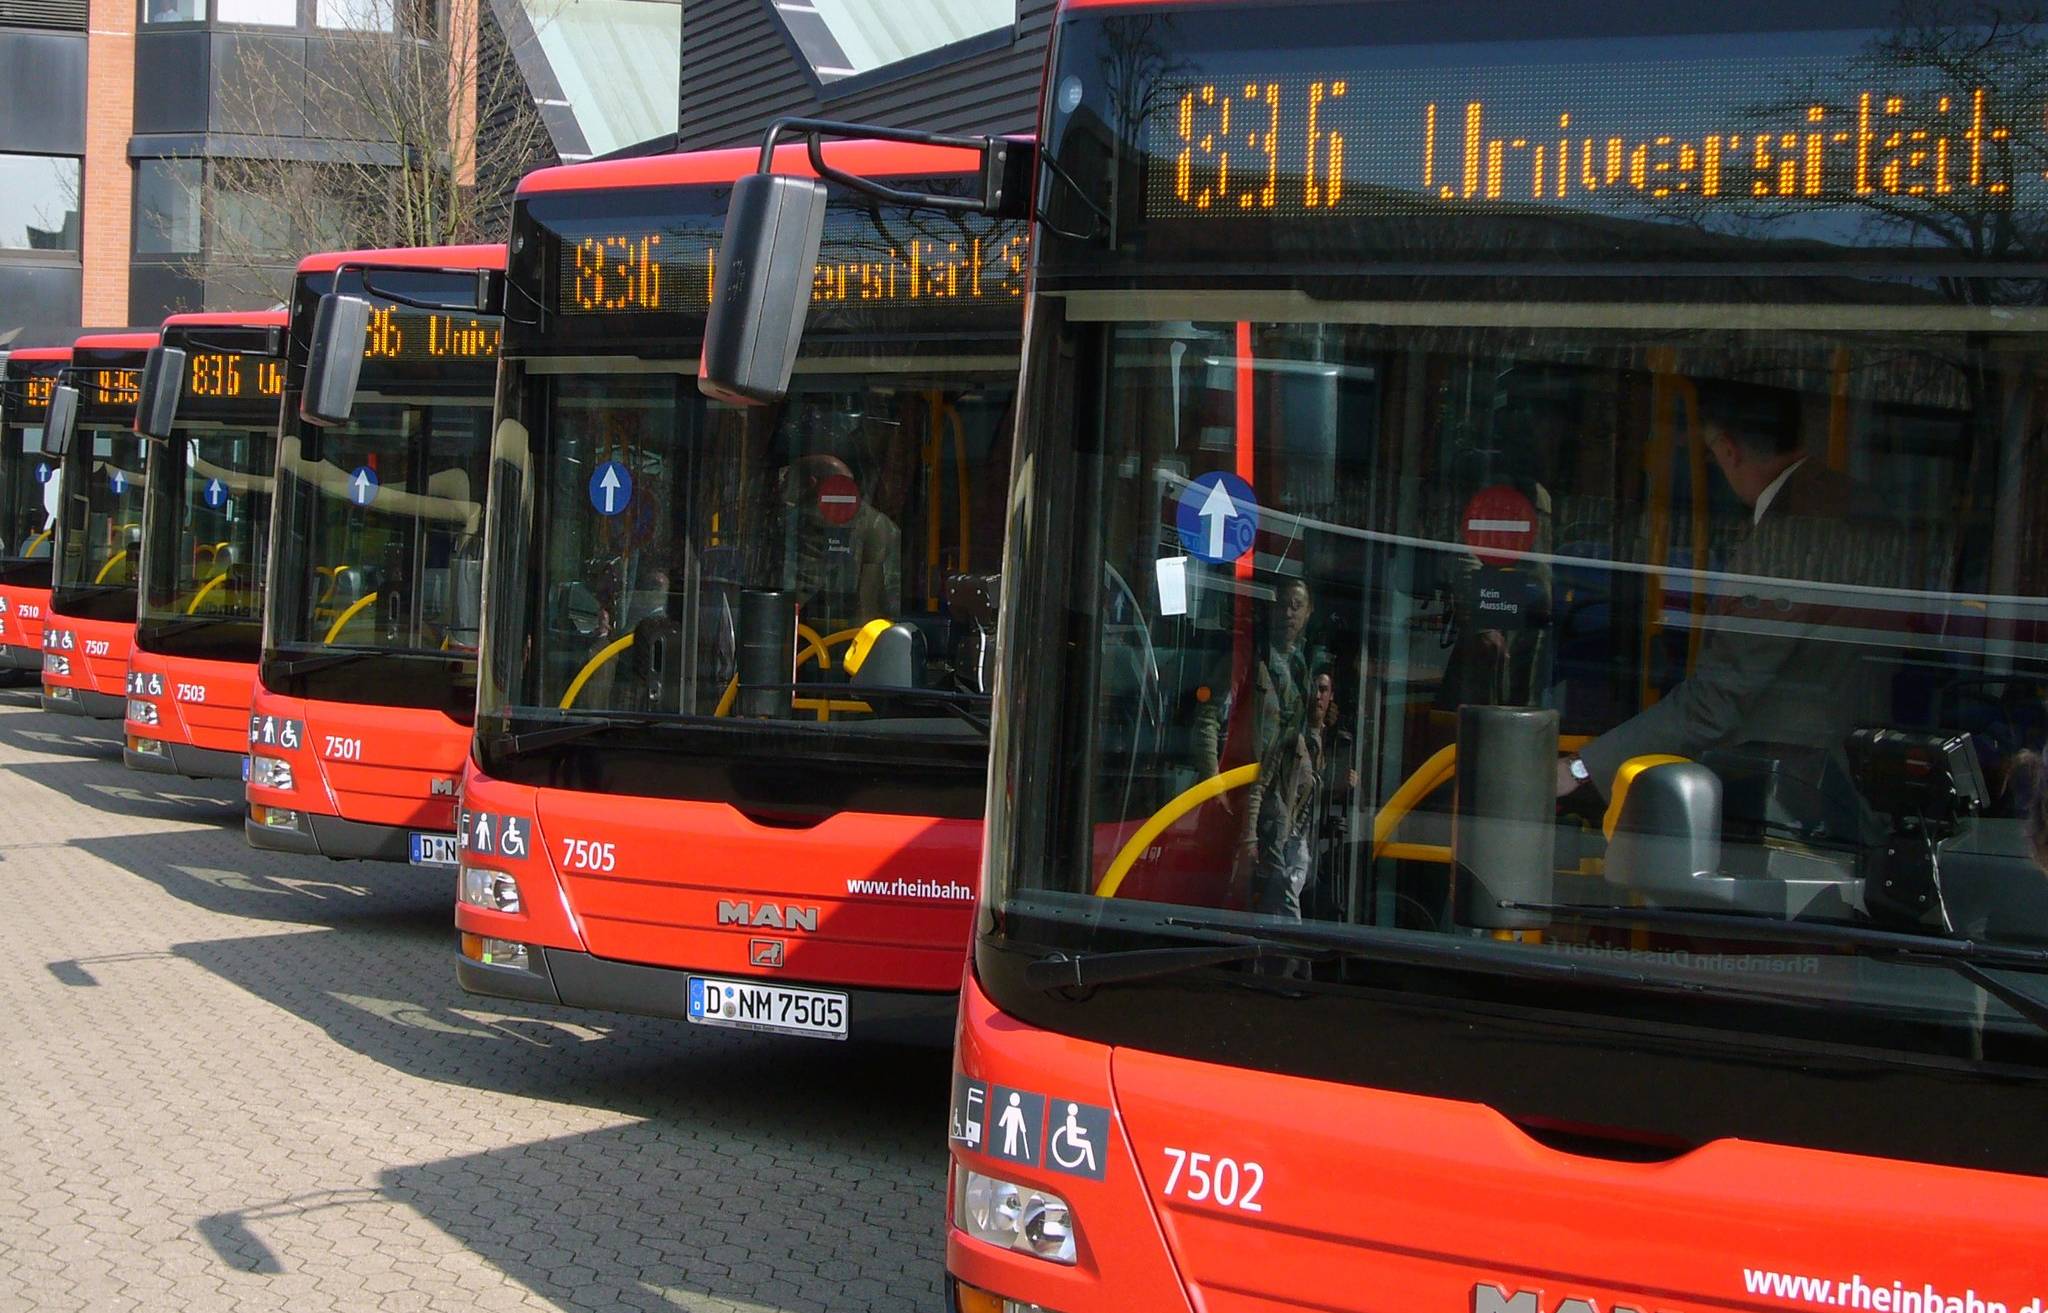 Mettmanner Duathlon: Elf Buslinien können nicht fahren